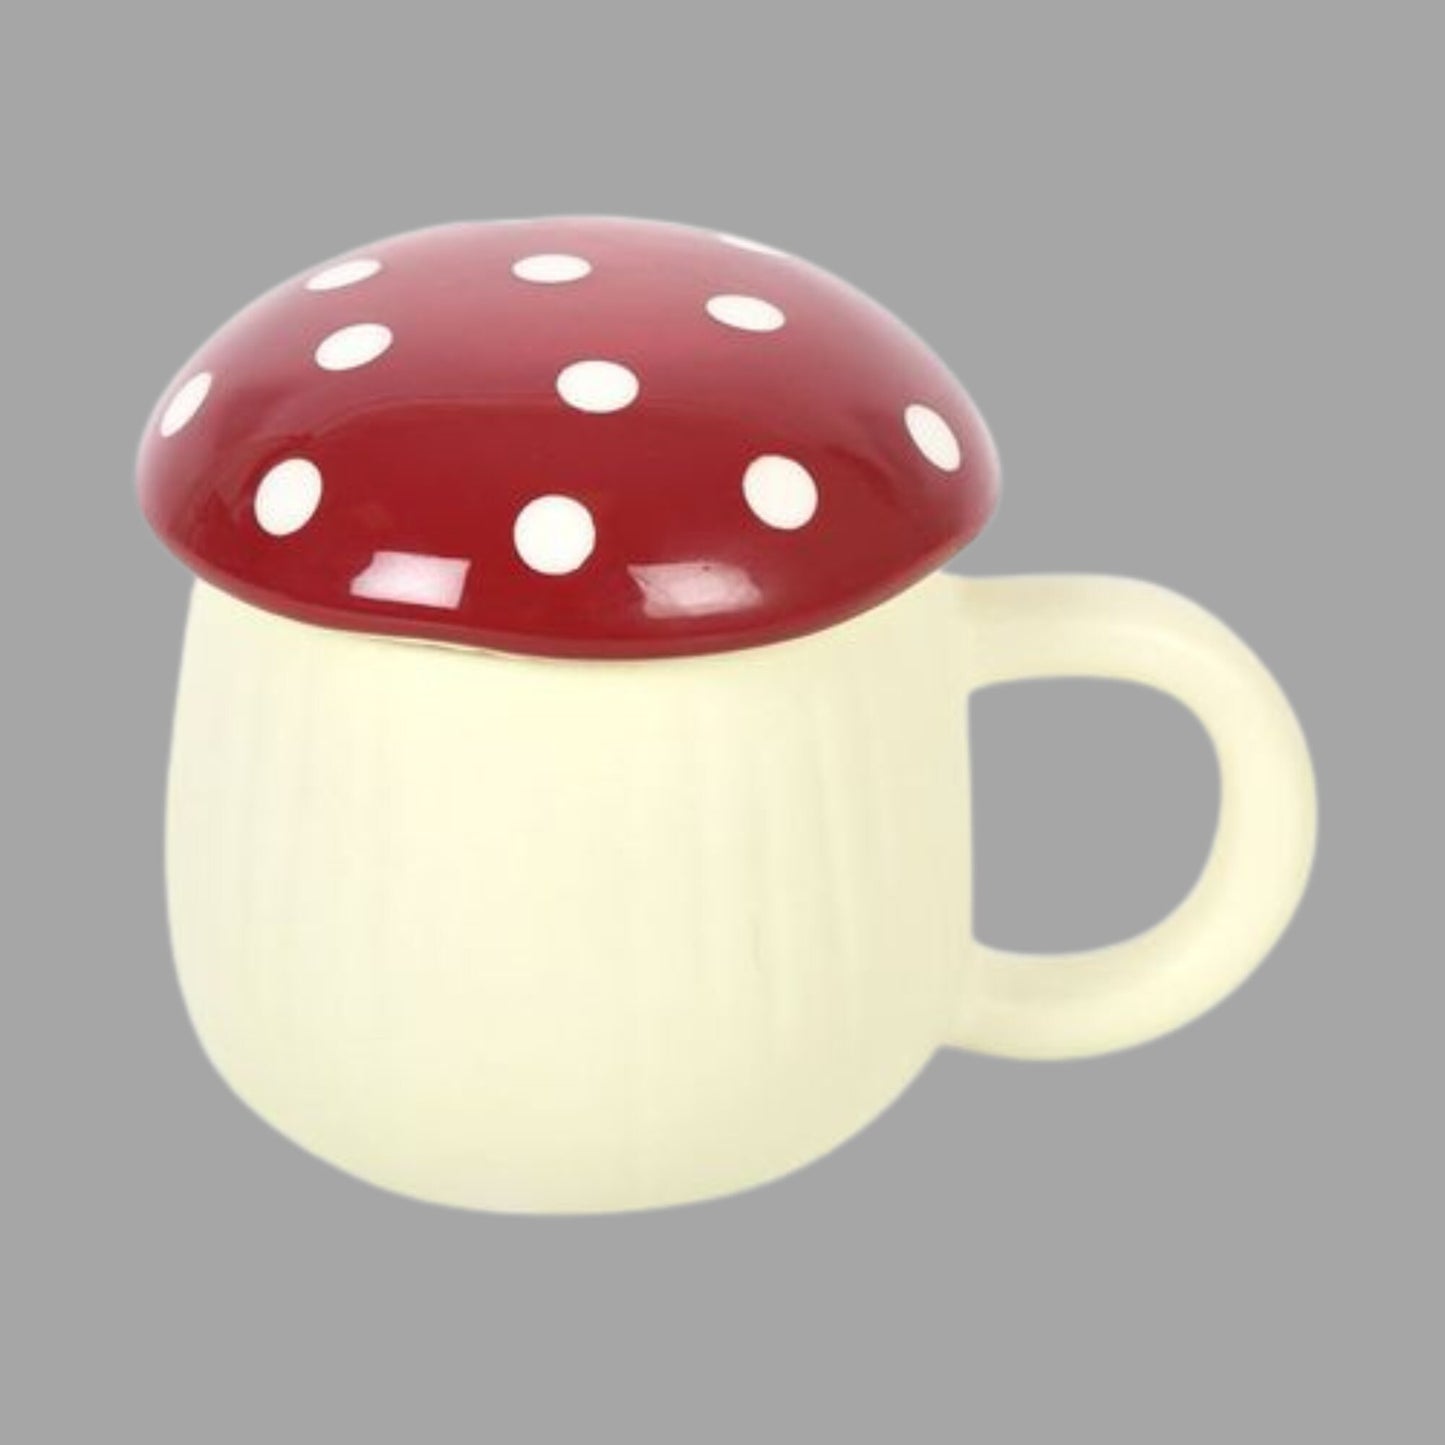 Mushroom Shaped Novelty Ceramic Mug